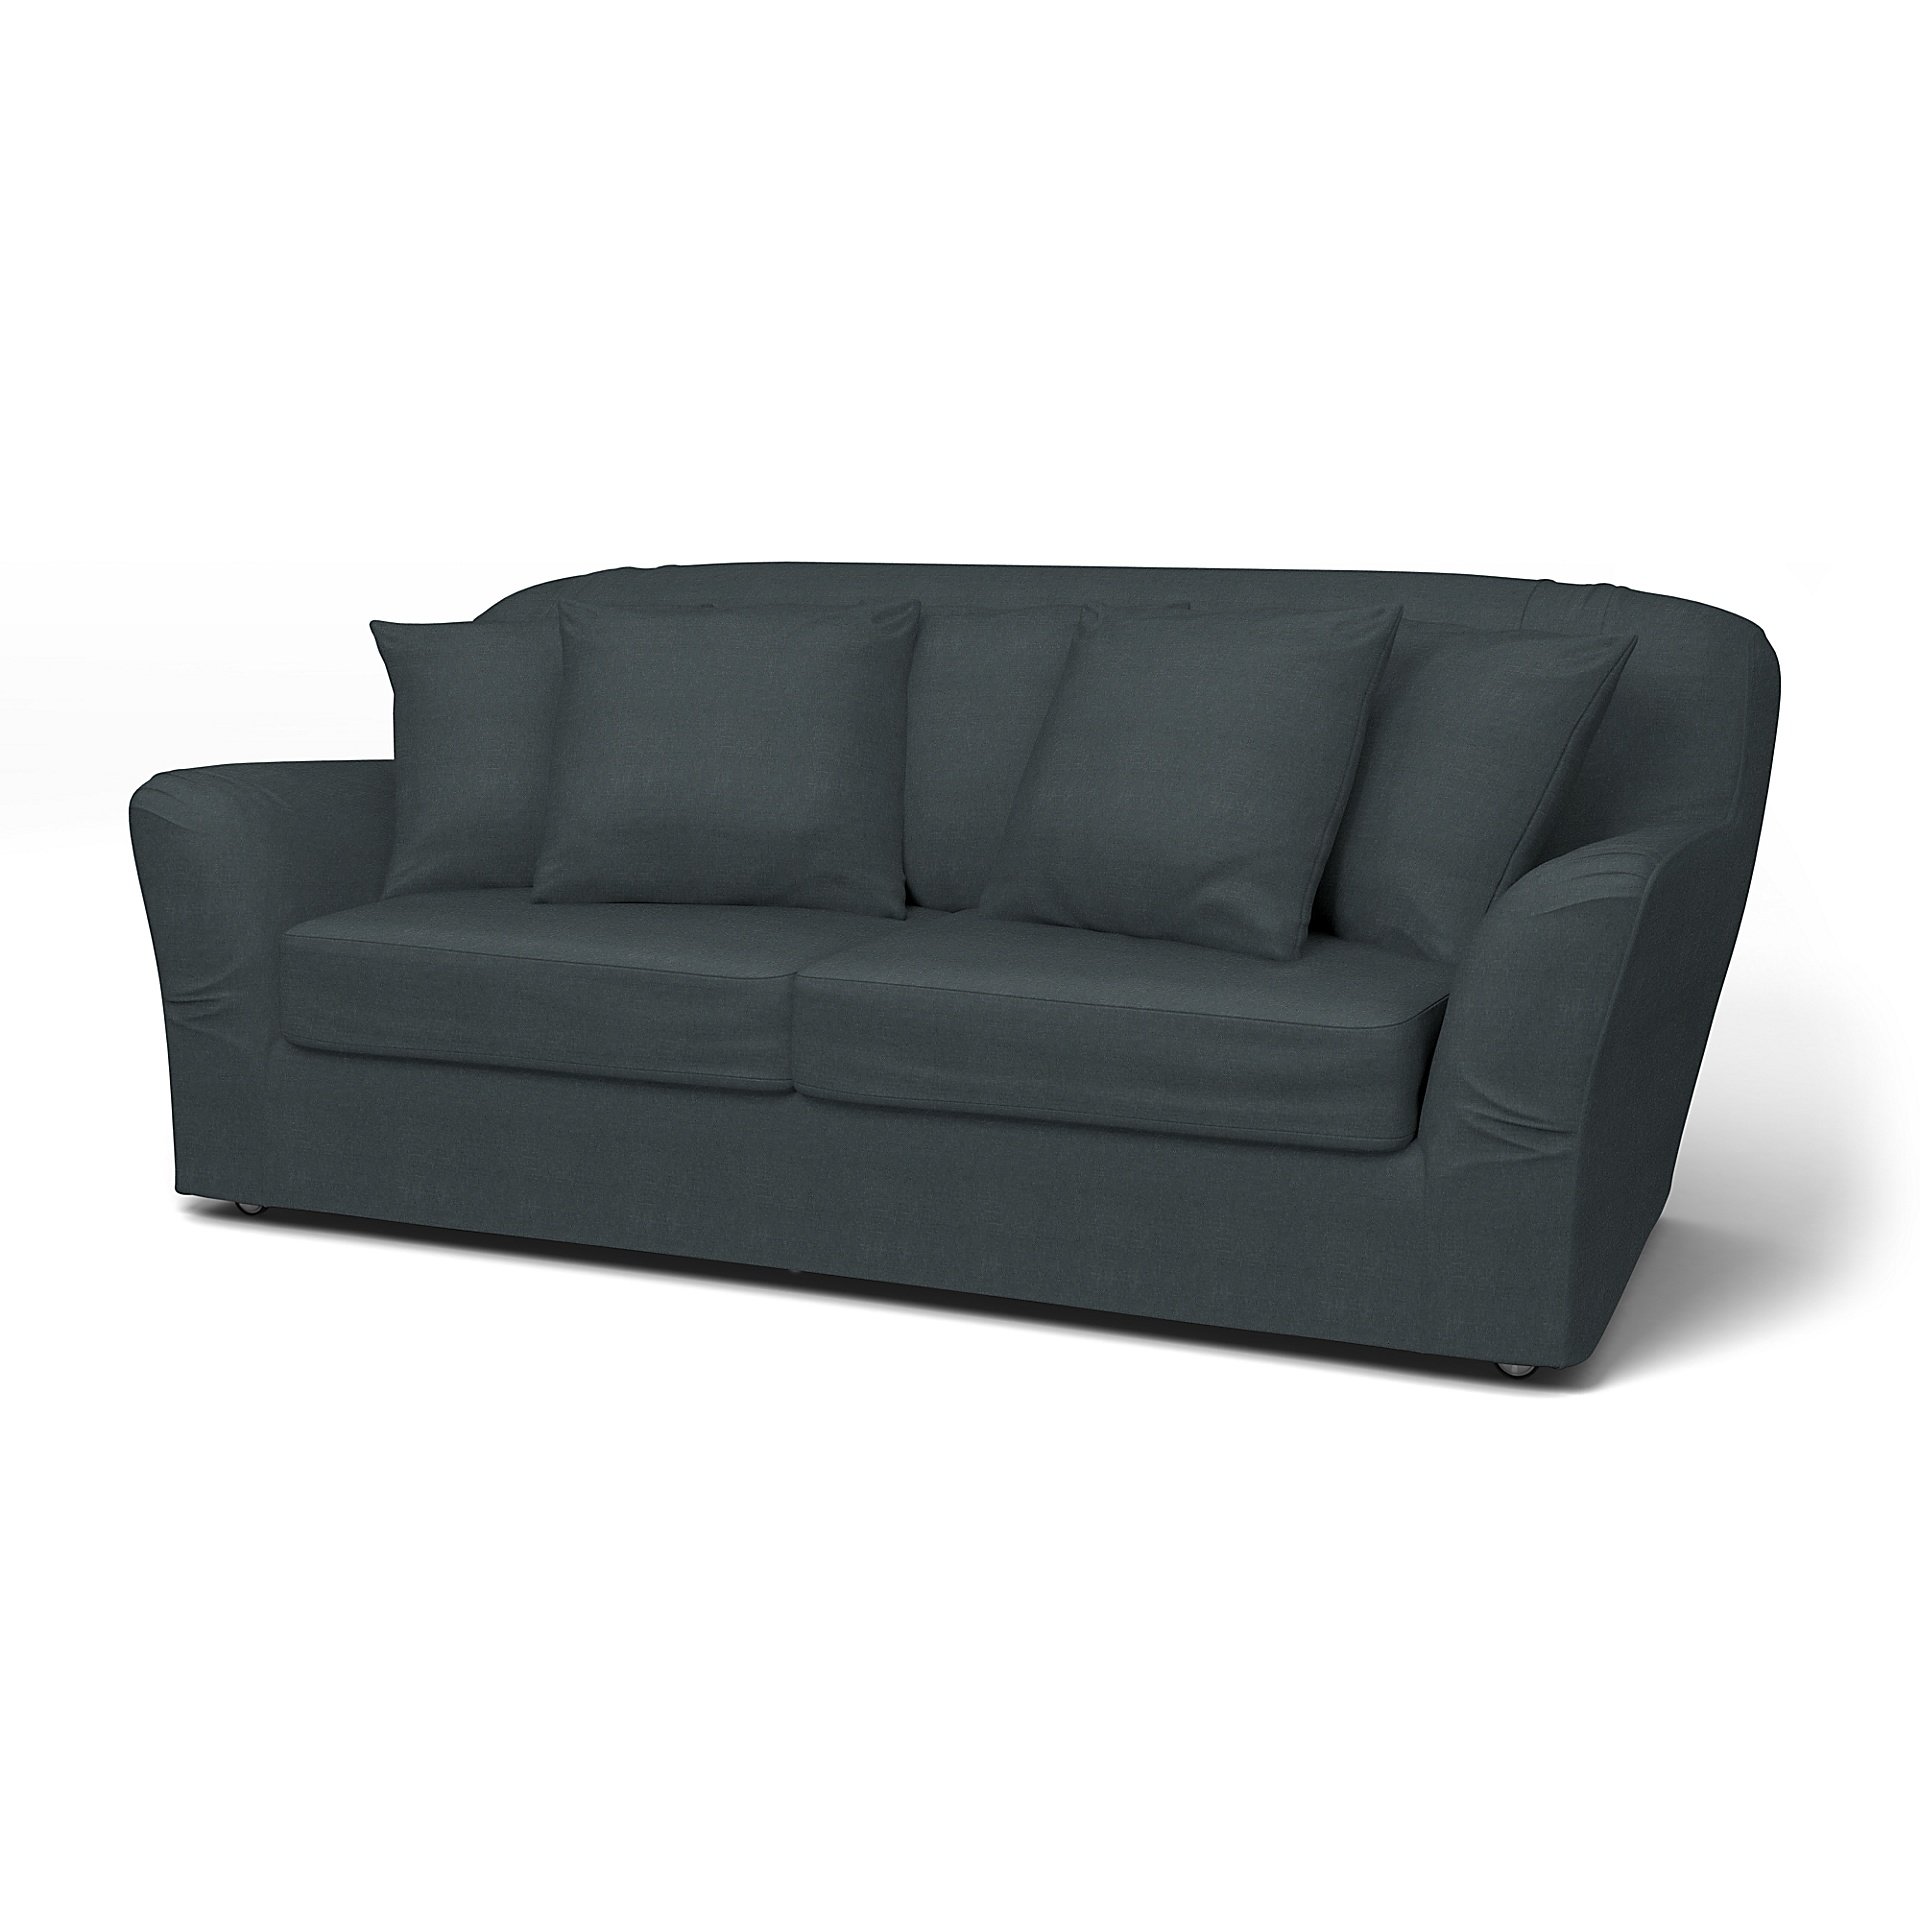 IKEA - Tomelilla Sofa Bed Cover (Small model), Graphite Grey, Linen - Bemz